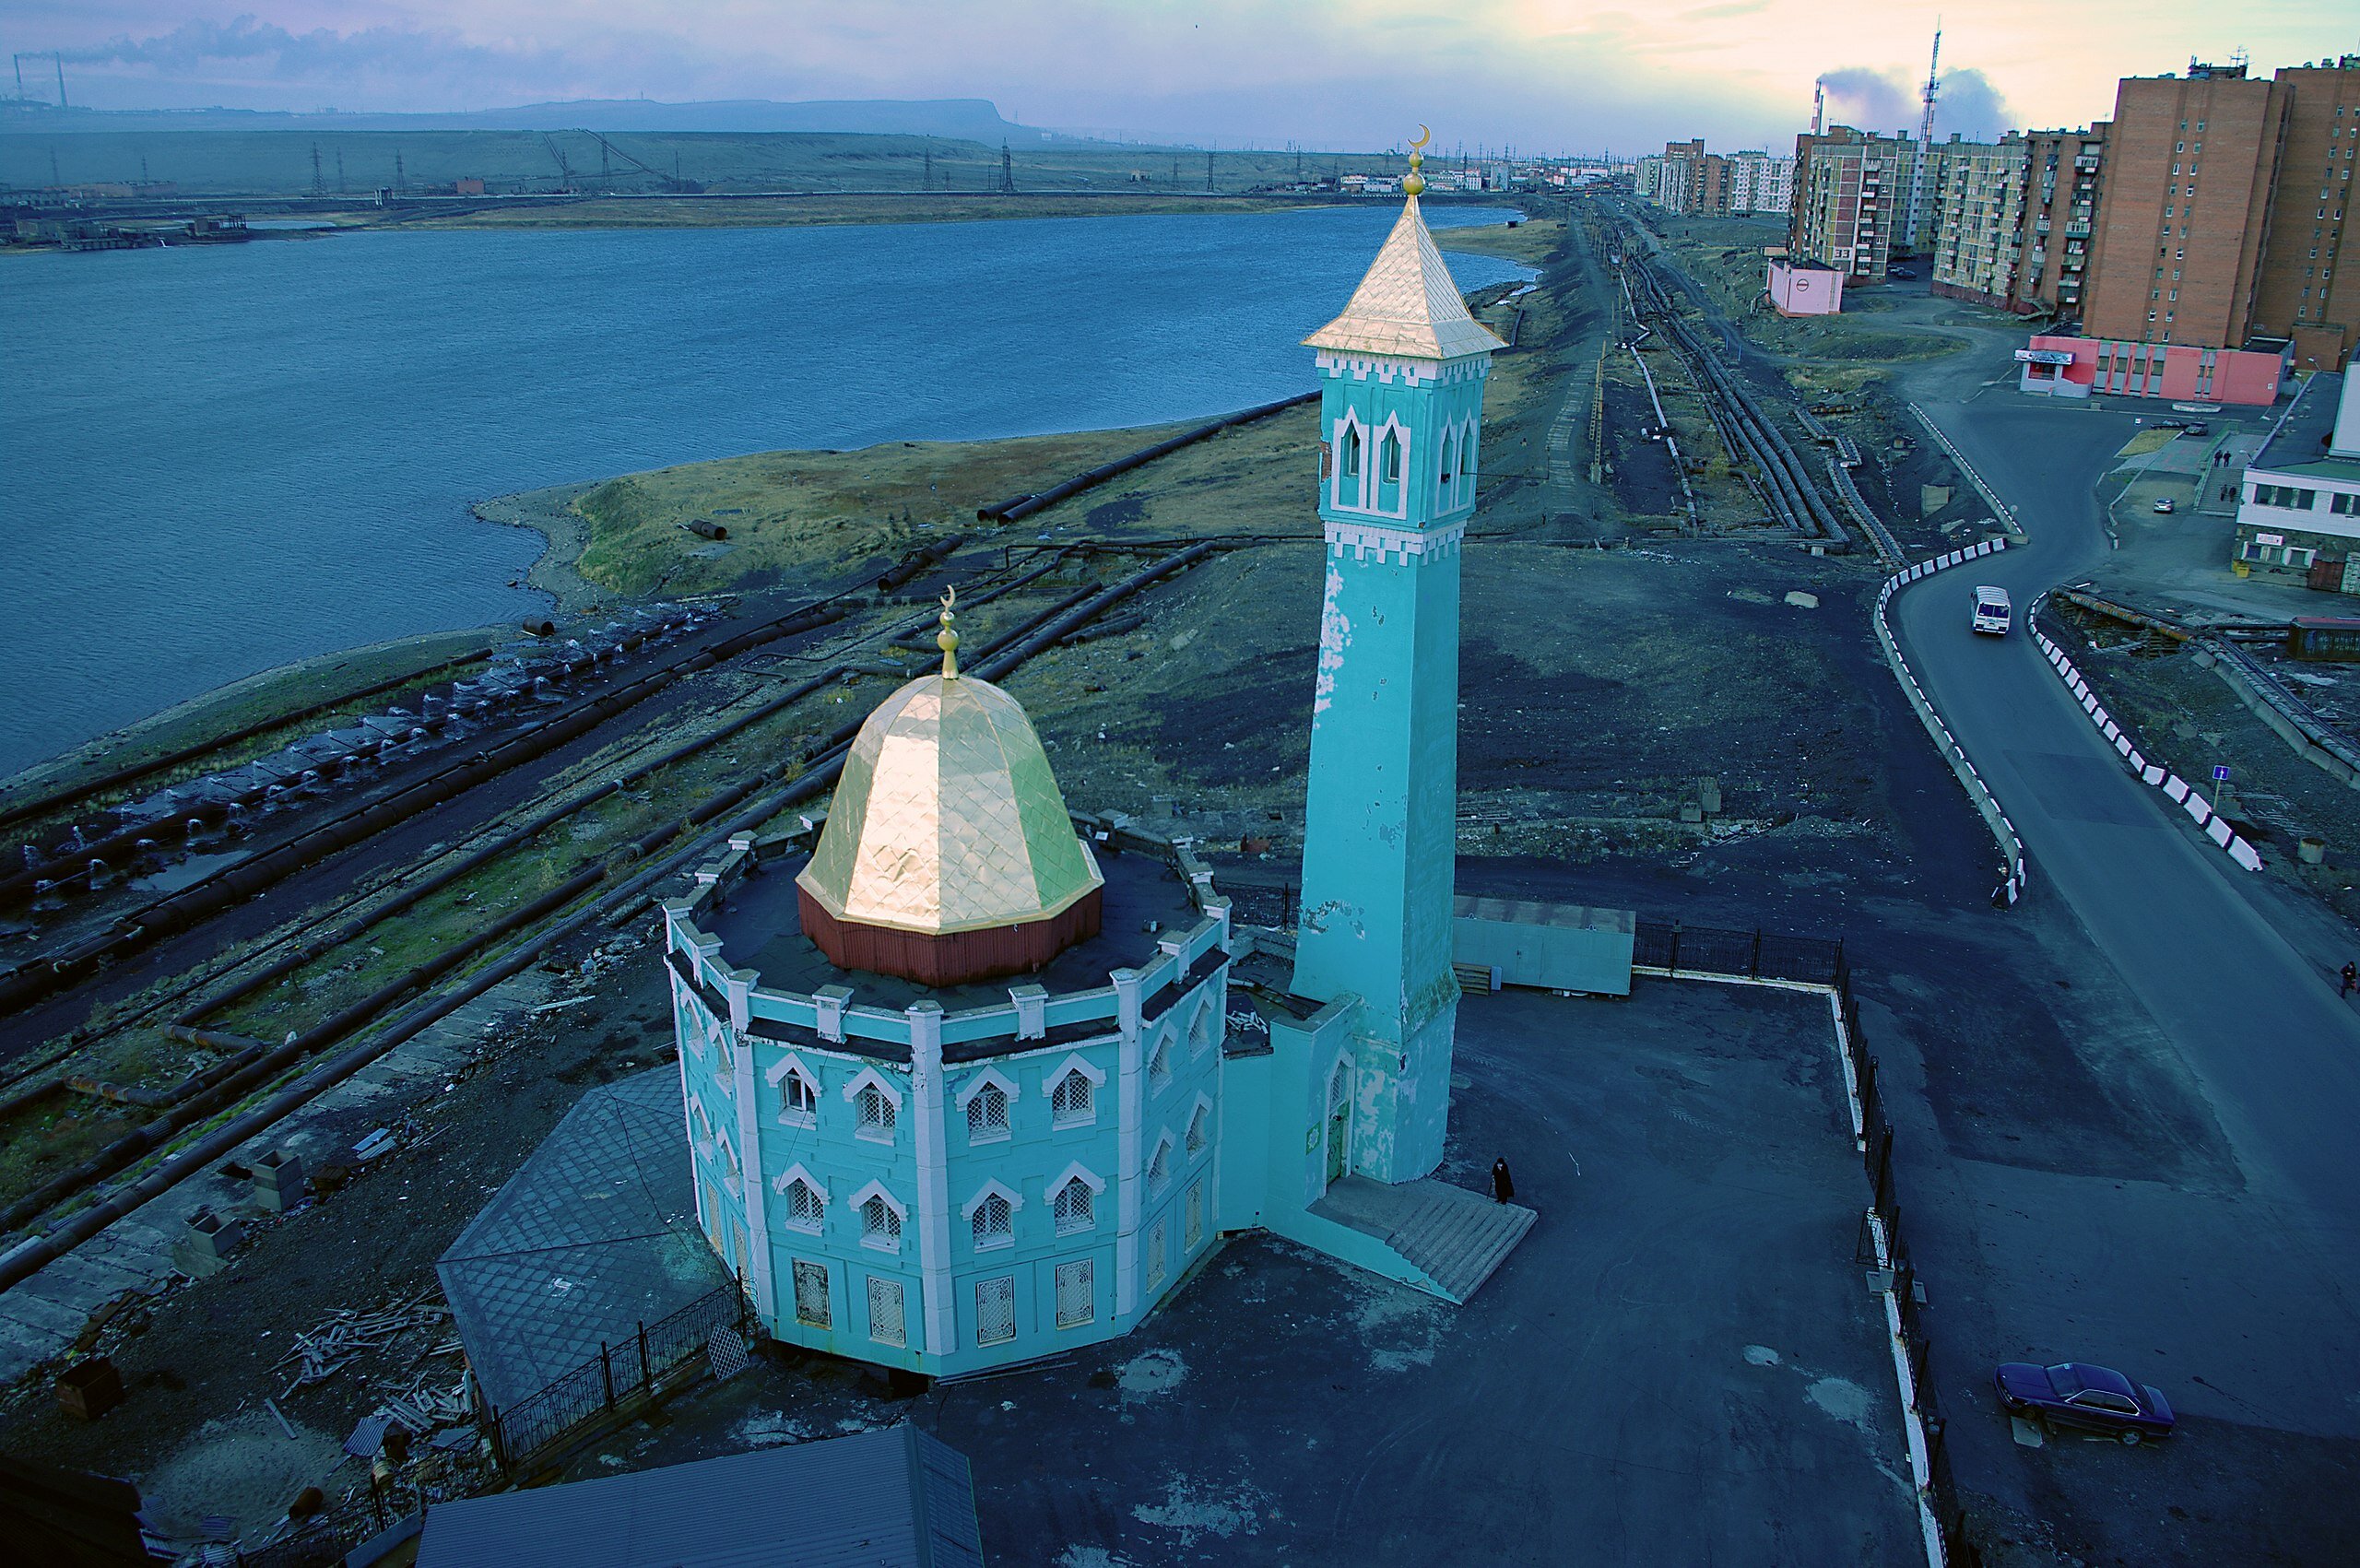 В Норильске в 1998 году построили самую северную в мире мечеть Нурд-Камал с необычным минаретом четырёхугольной формы.